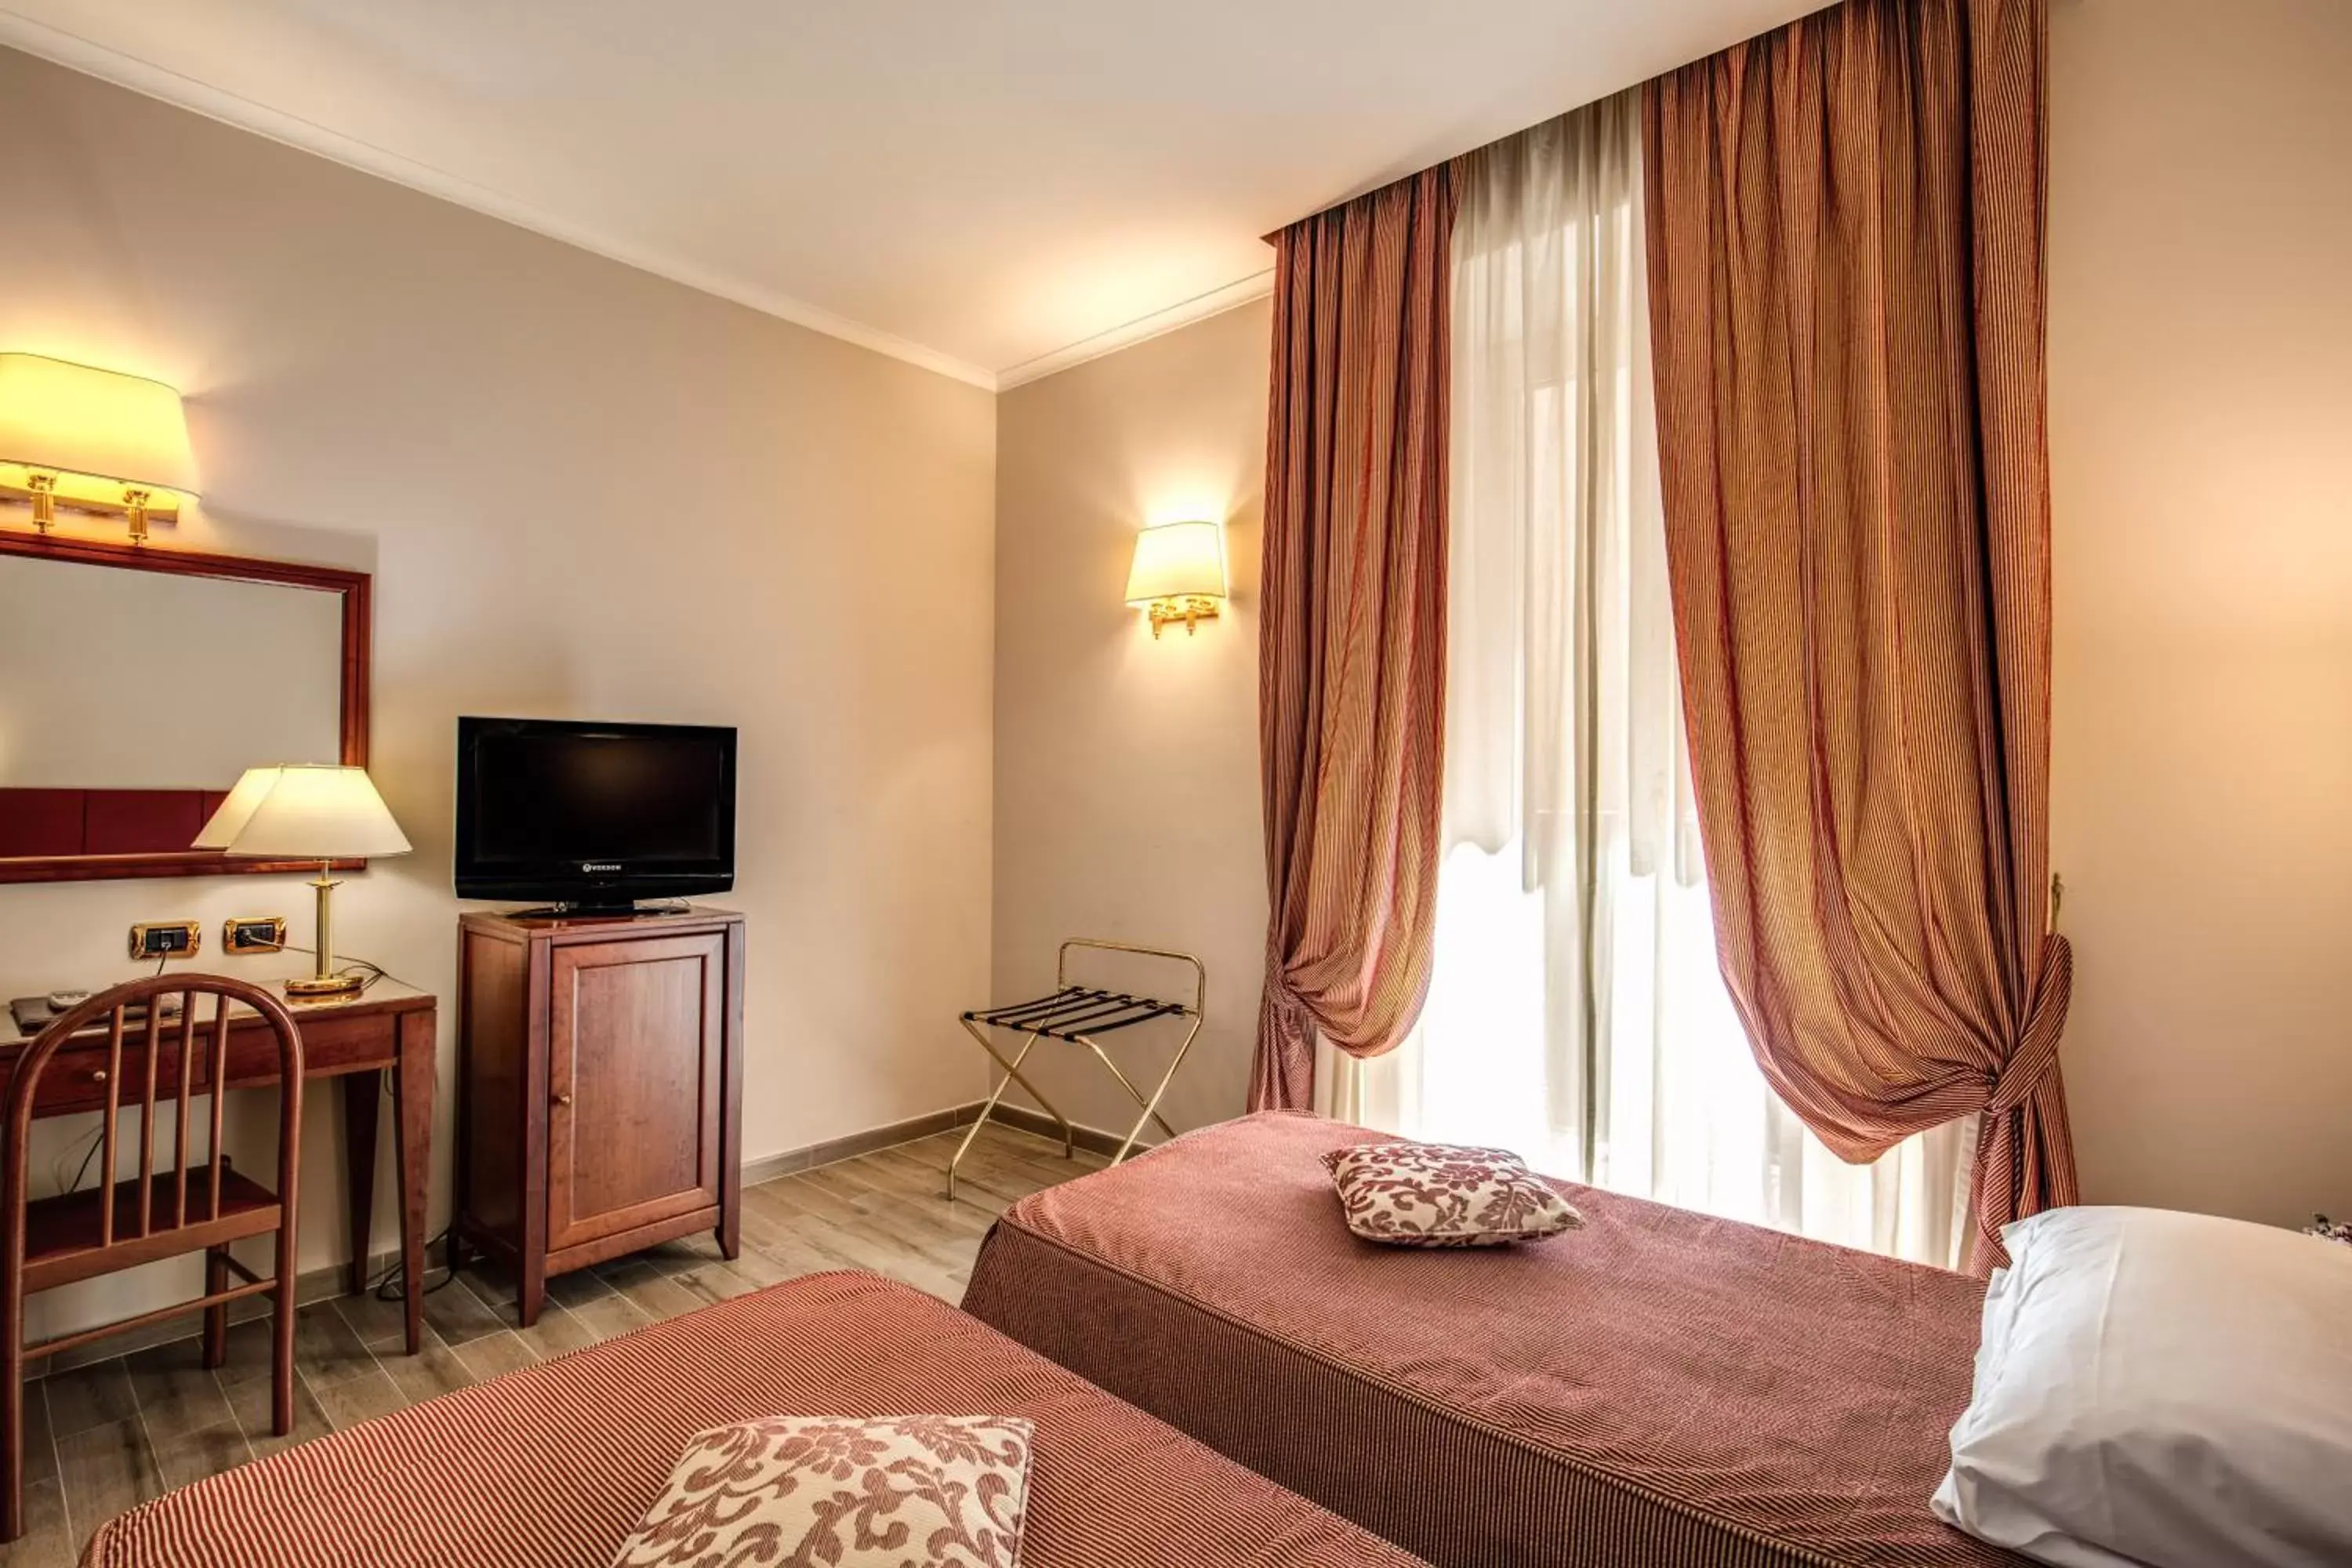 Bedroom, TV/Entertainment Center in Hotel Villafranca